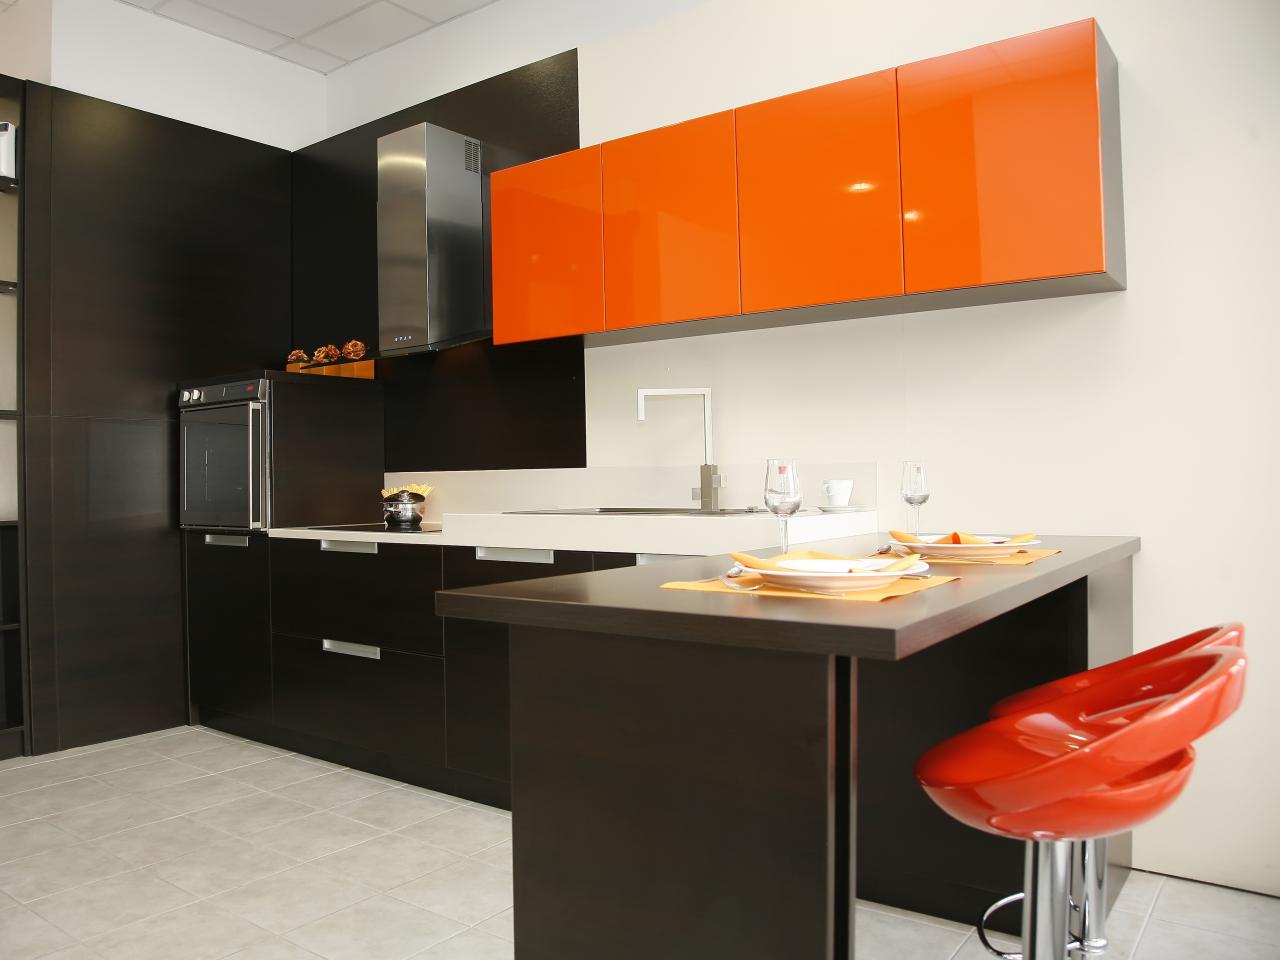 Modern Kitchen With Glossy Orange Cabinets | HGTV